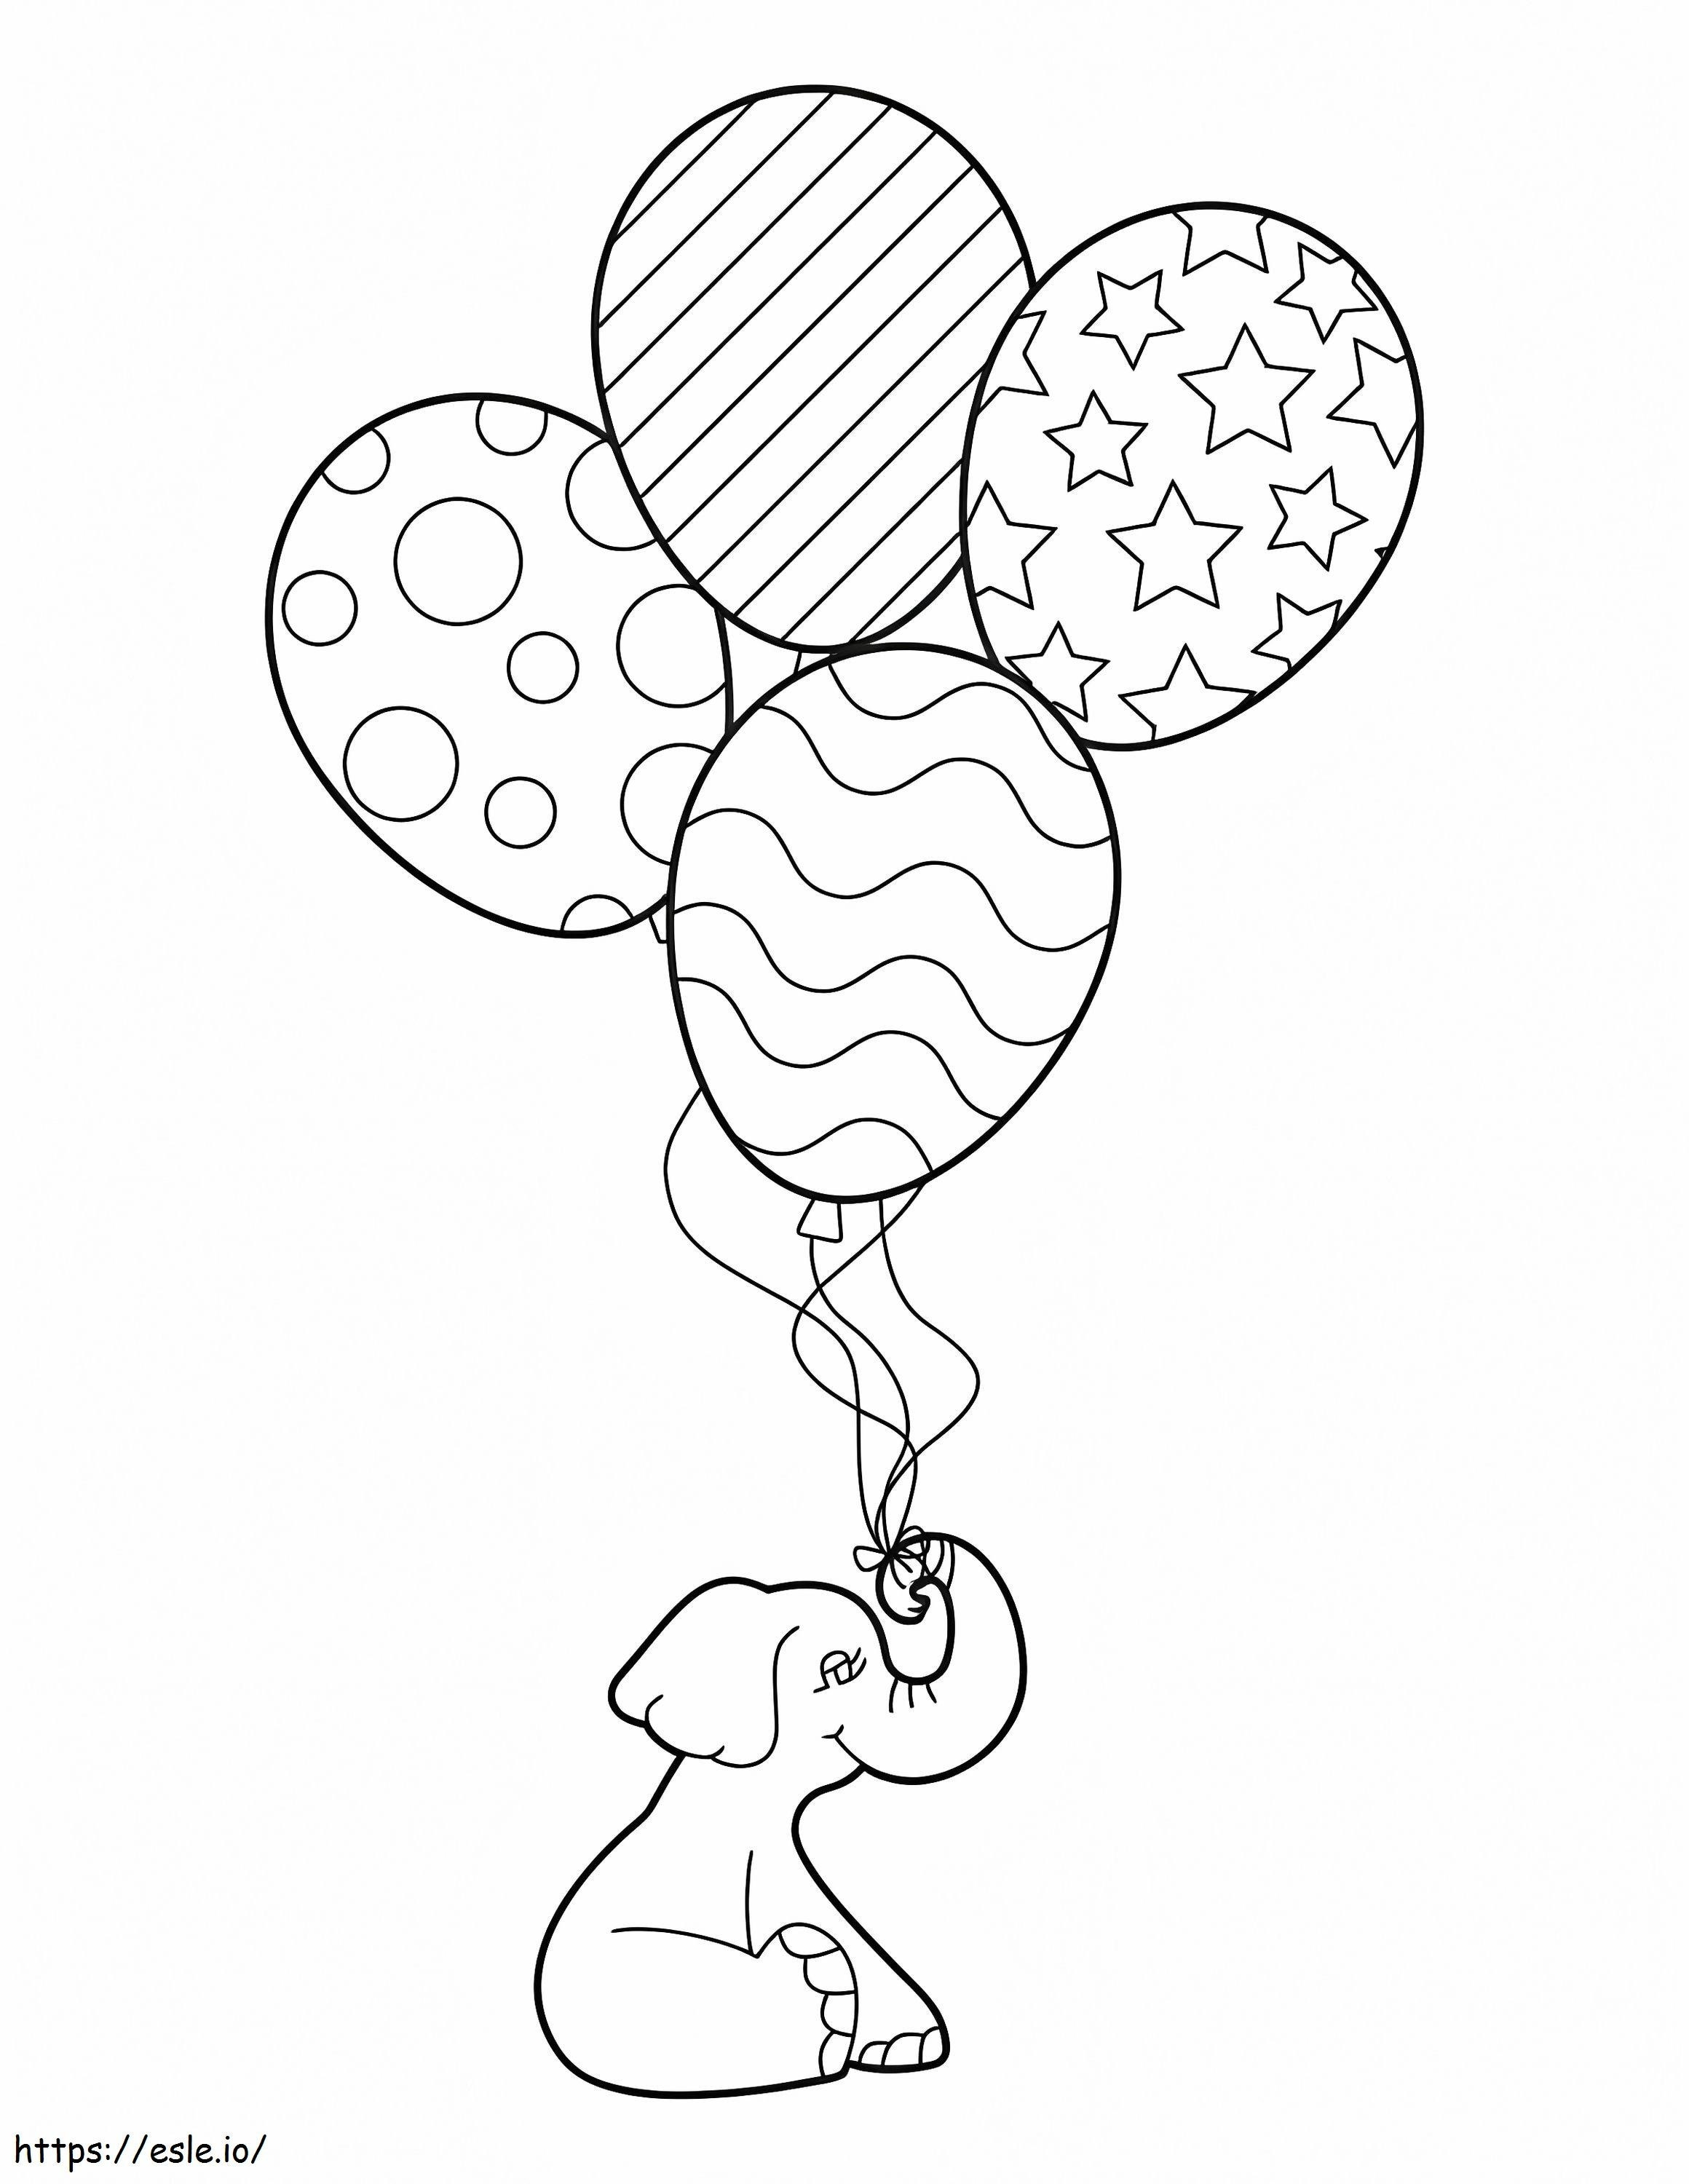 Elefant și baloane de colorat